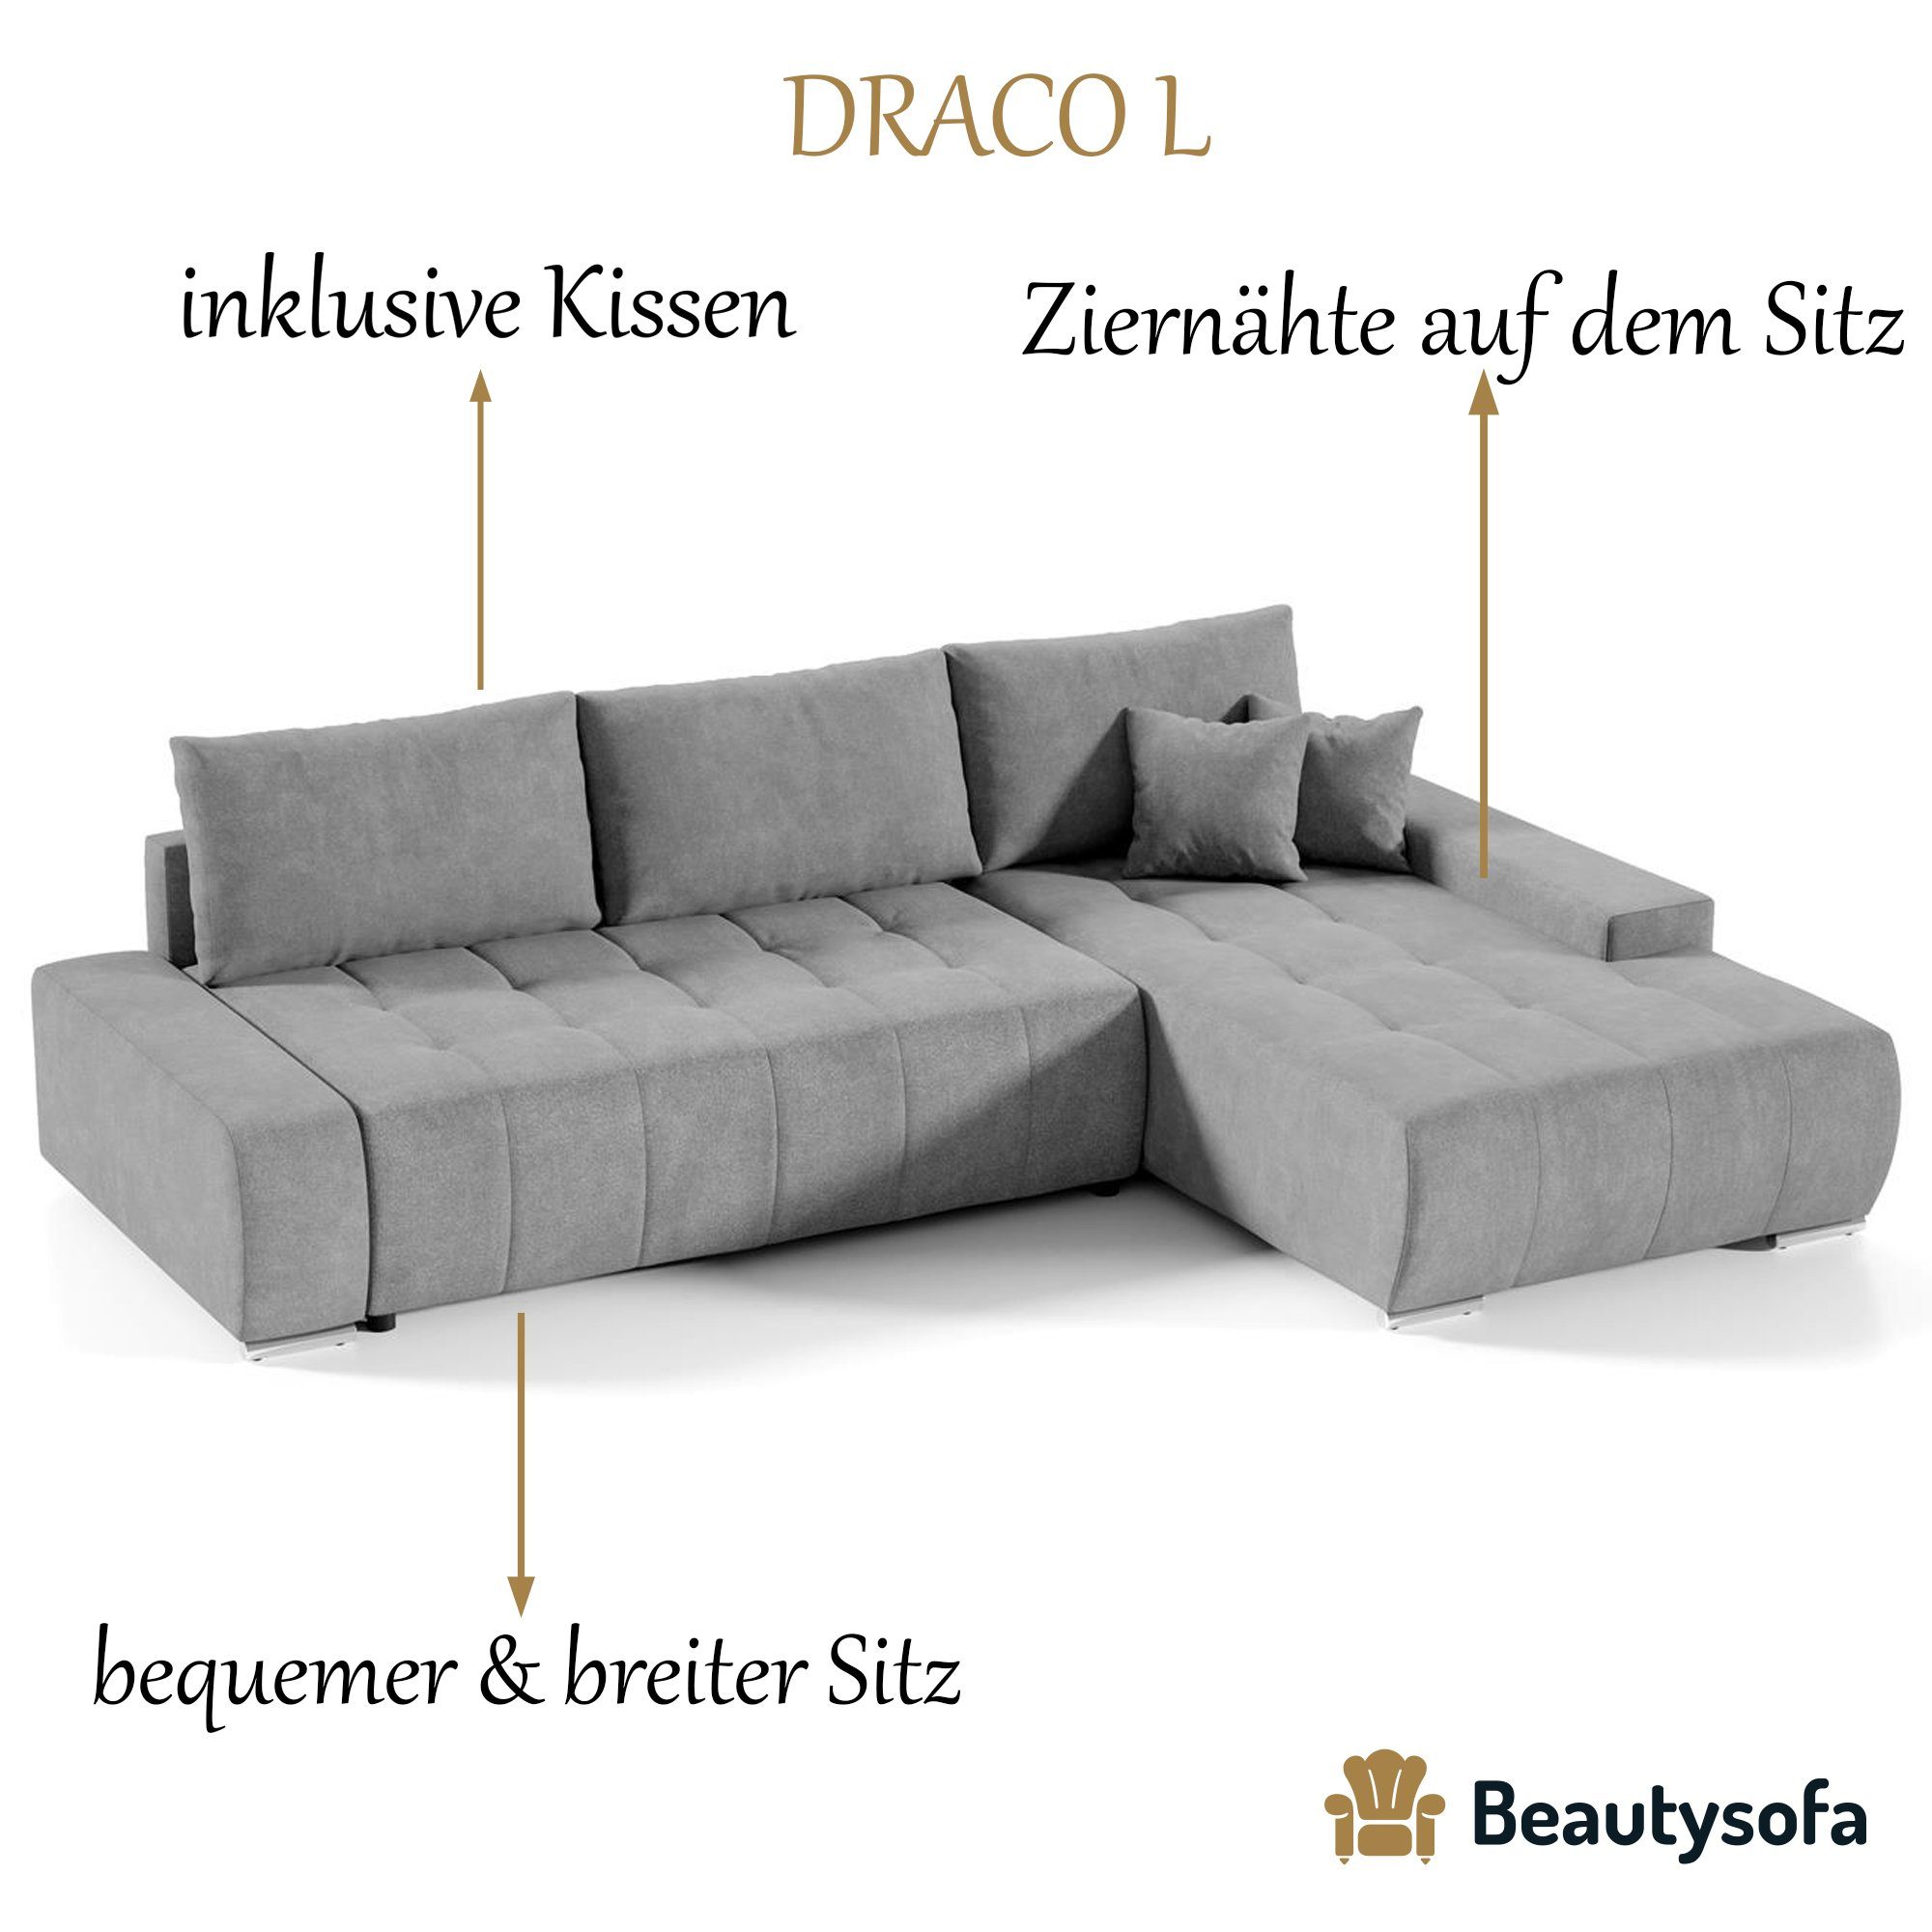 Sofa DRACO Hellgrau Schlaffunktion, Wohnzimmer Beautysofa Couch Bettkasten (aston 15) Ecksofa Ecksofa mit